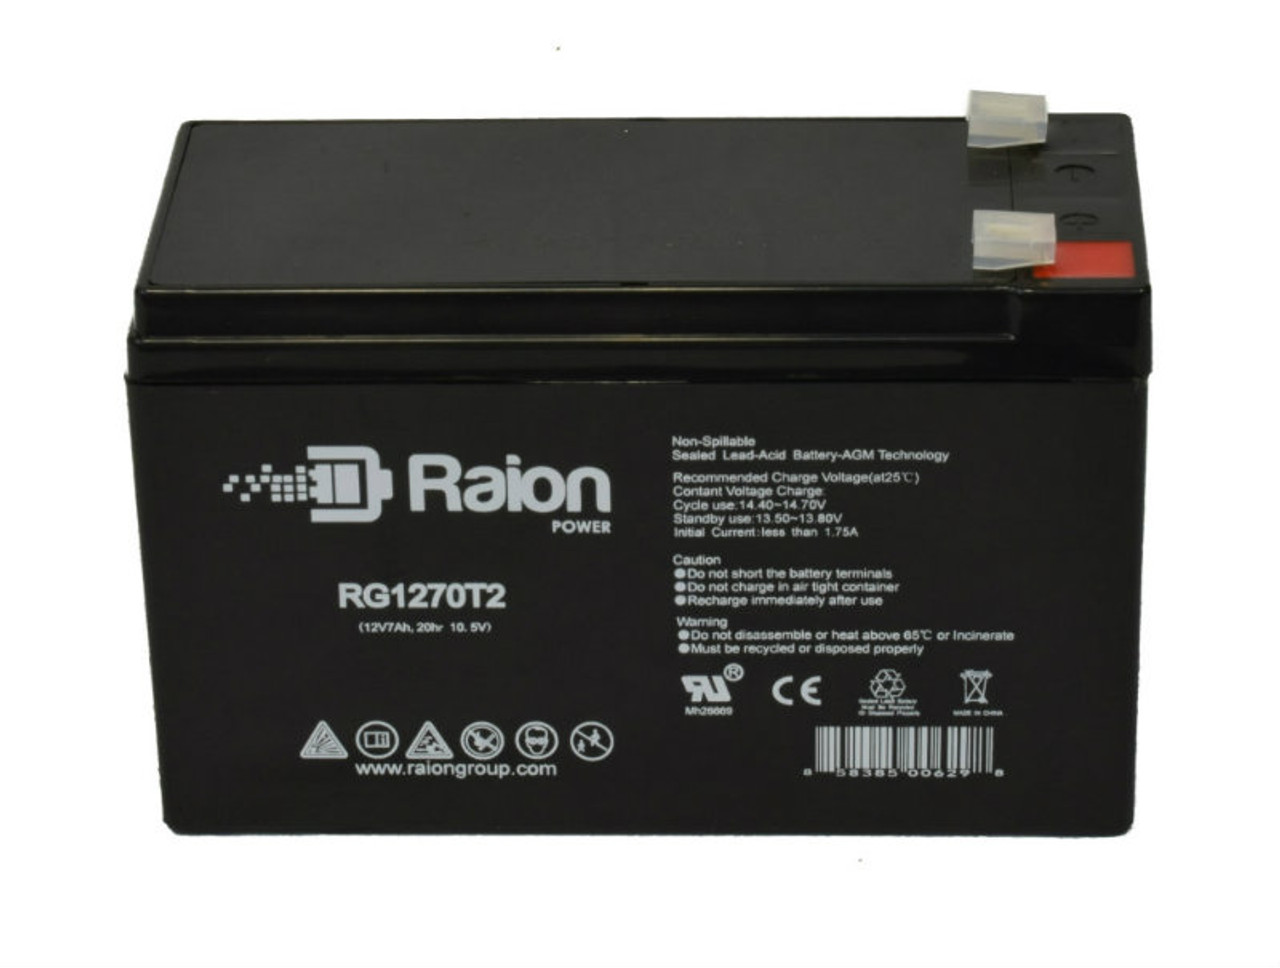 Raion Power RG1270T2 12V 7Ah Lead Acid Battery for Kidzone 048-ATV12 12V Ride On 4-Wheeler ATV